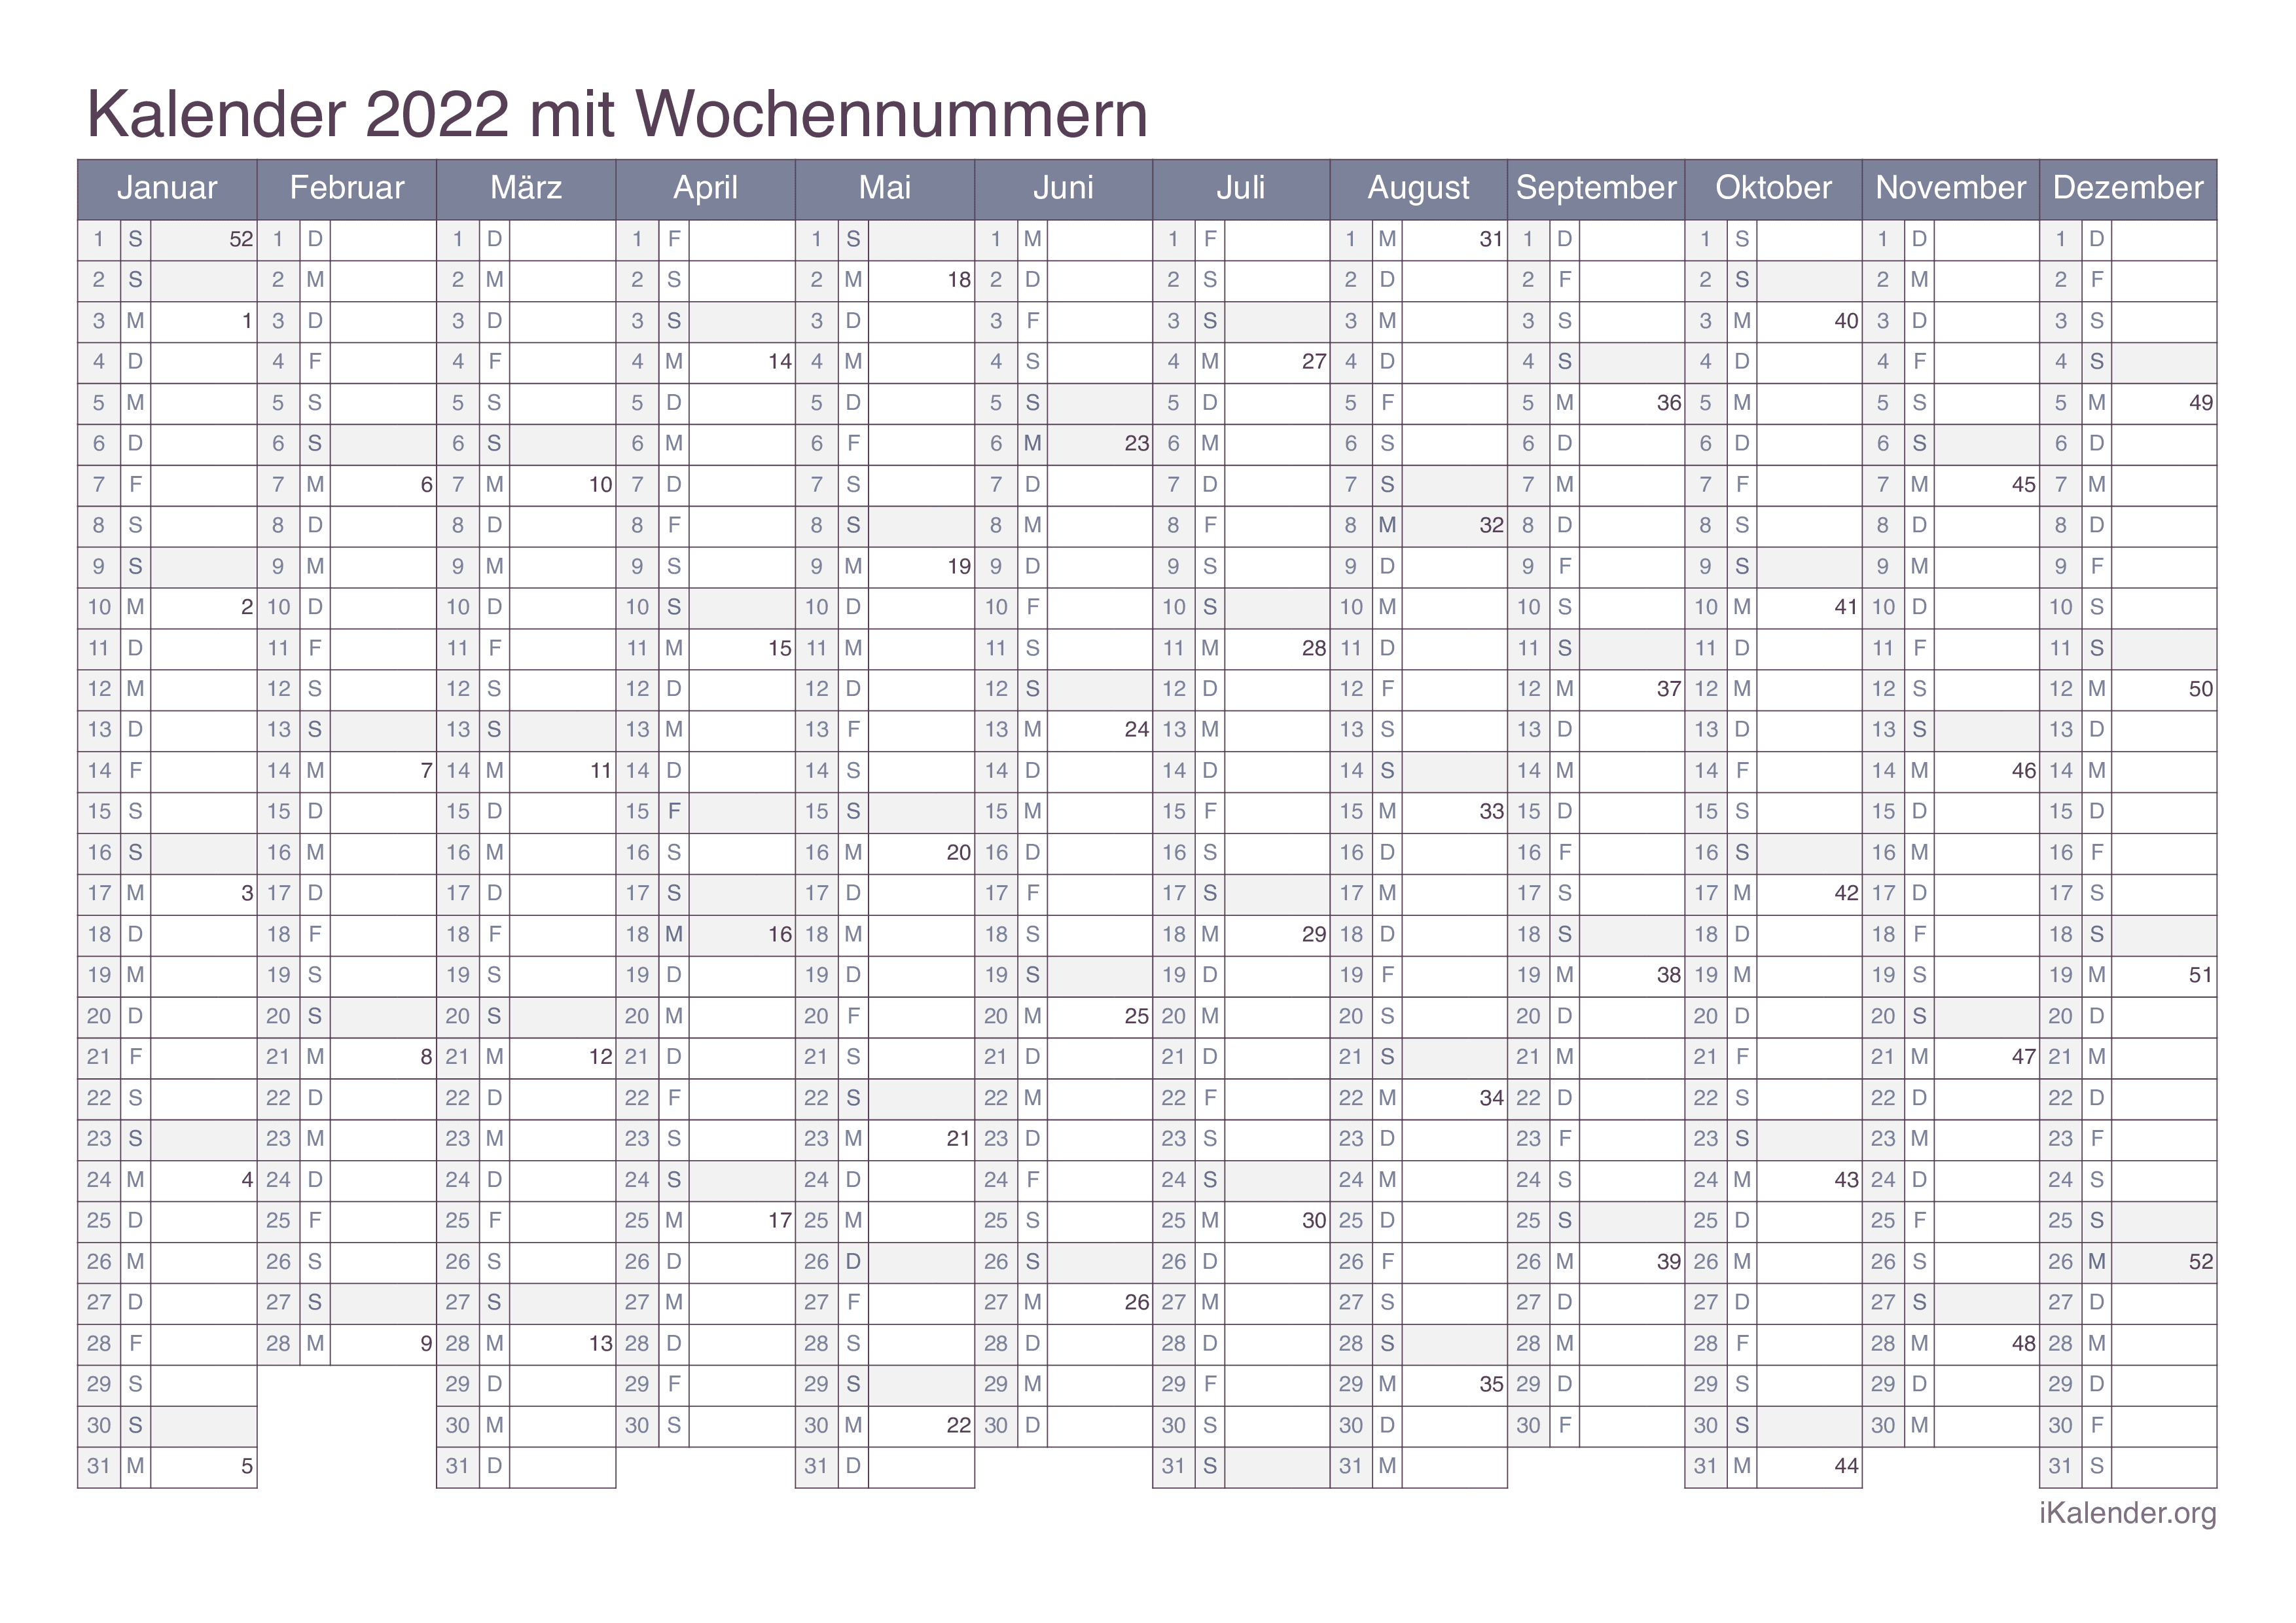 Jahreskalender 2022 mit Wochennummern - Office